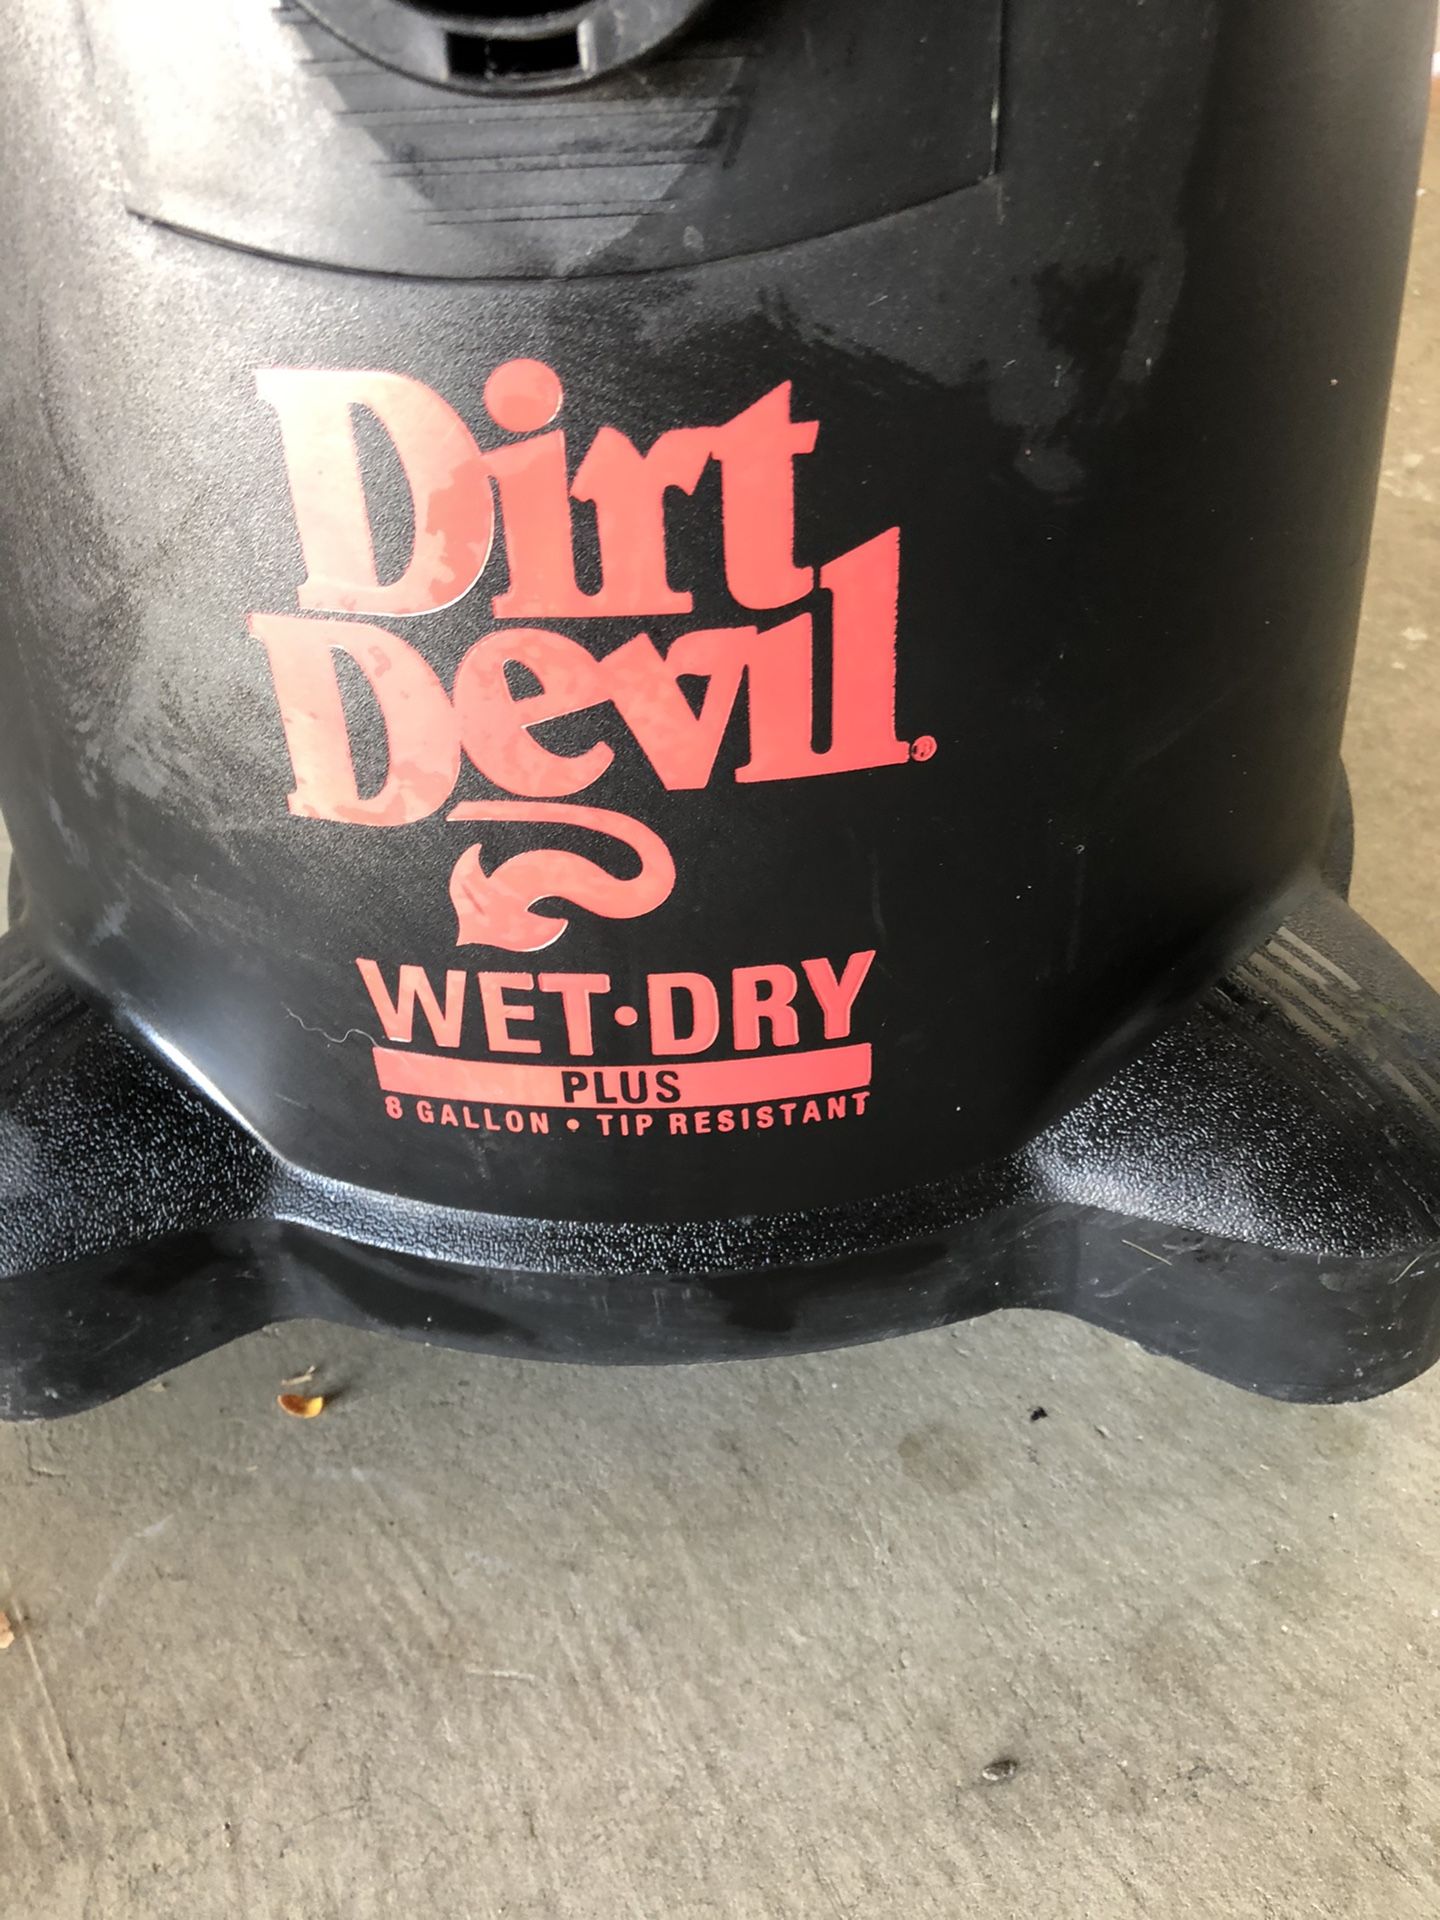 Dirt Devil Wet Dry Plus 8 gallon vac